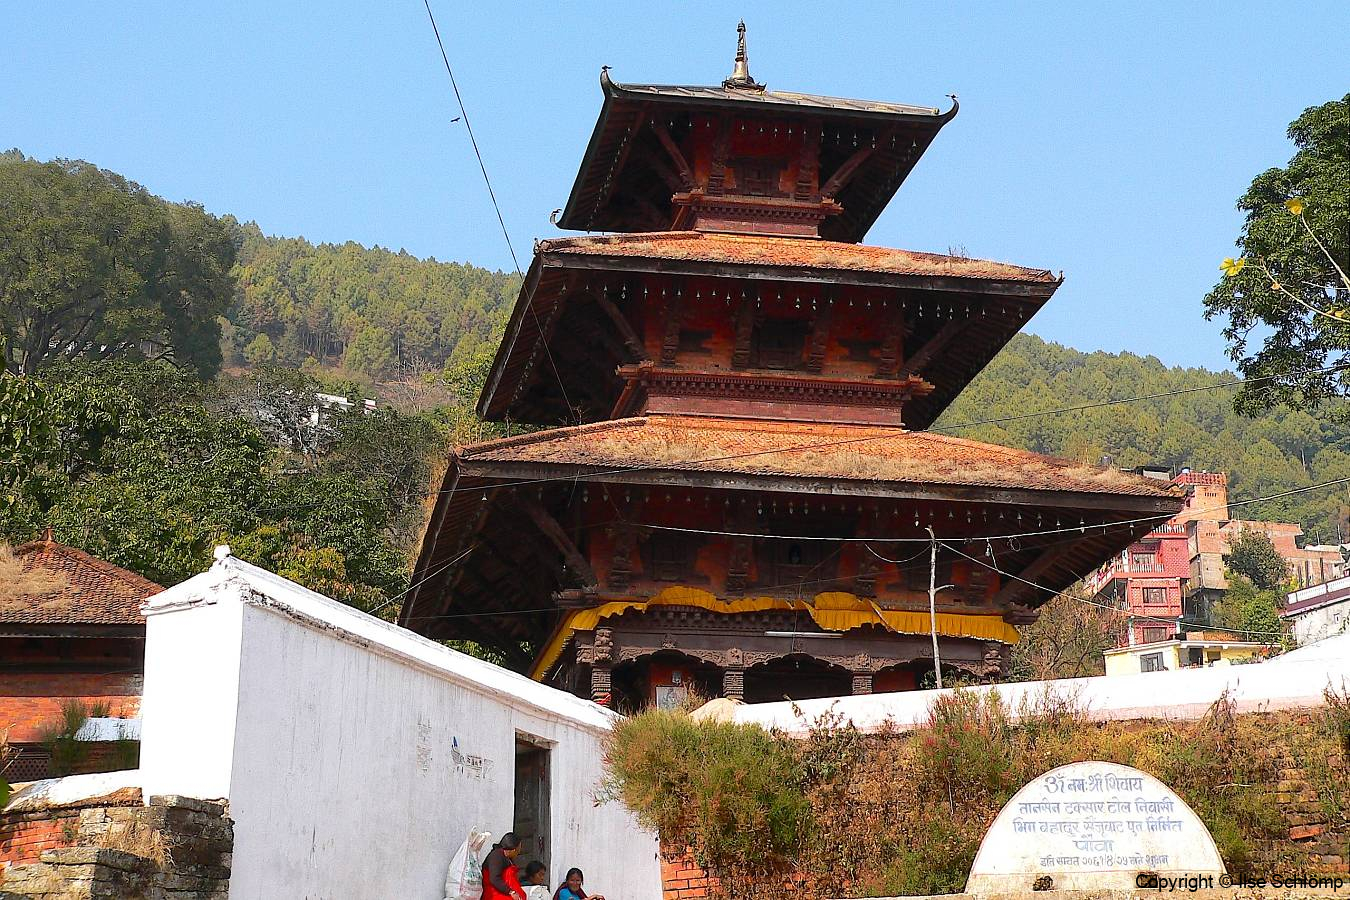 Nepal, Tansen, Shree Amar Narayan Tempel